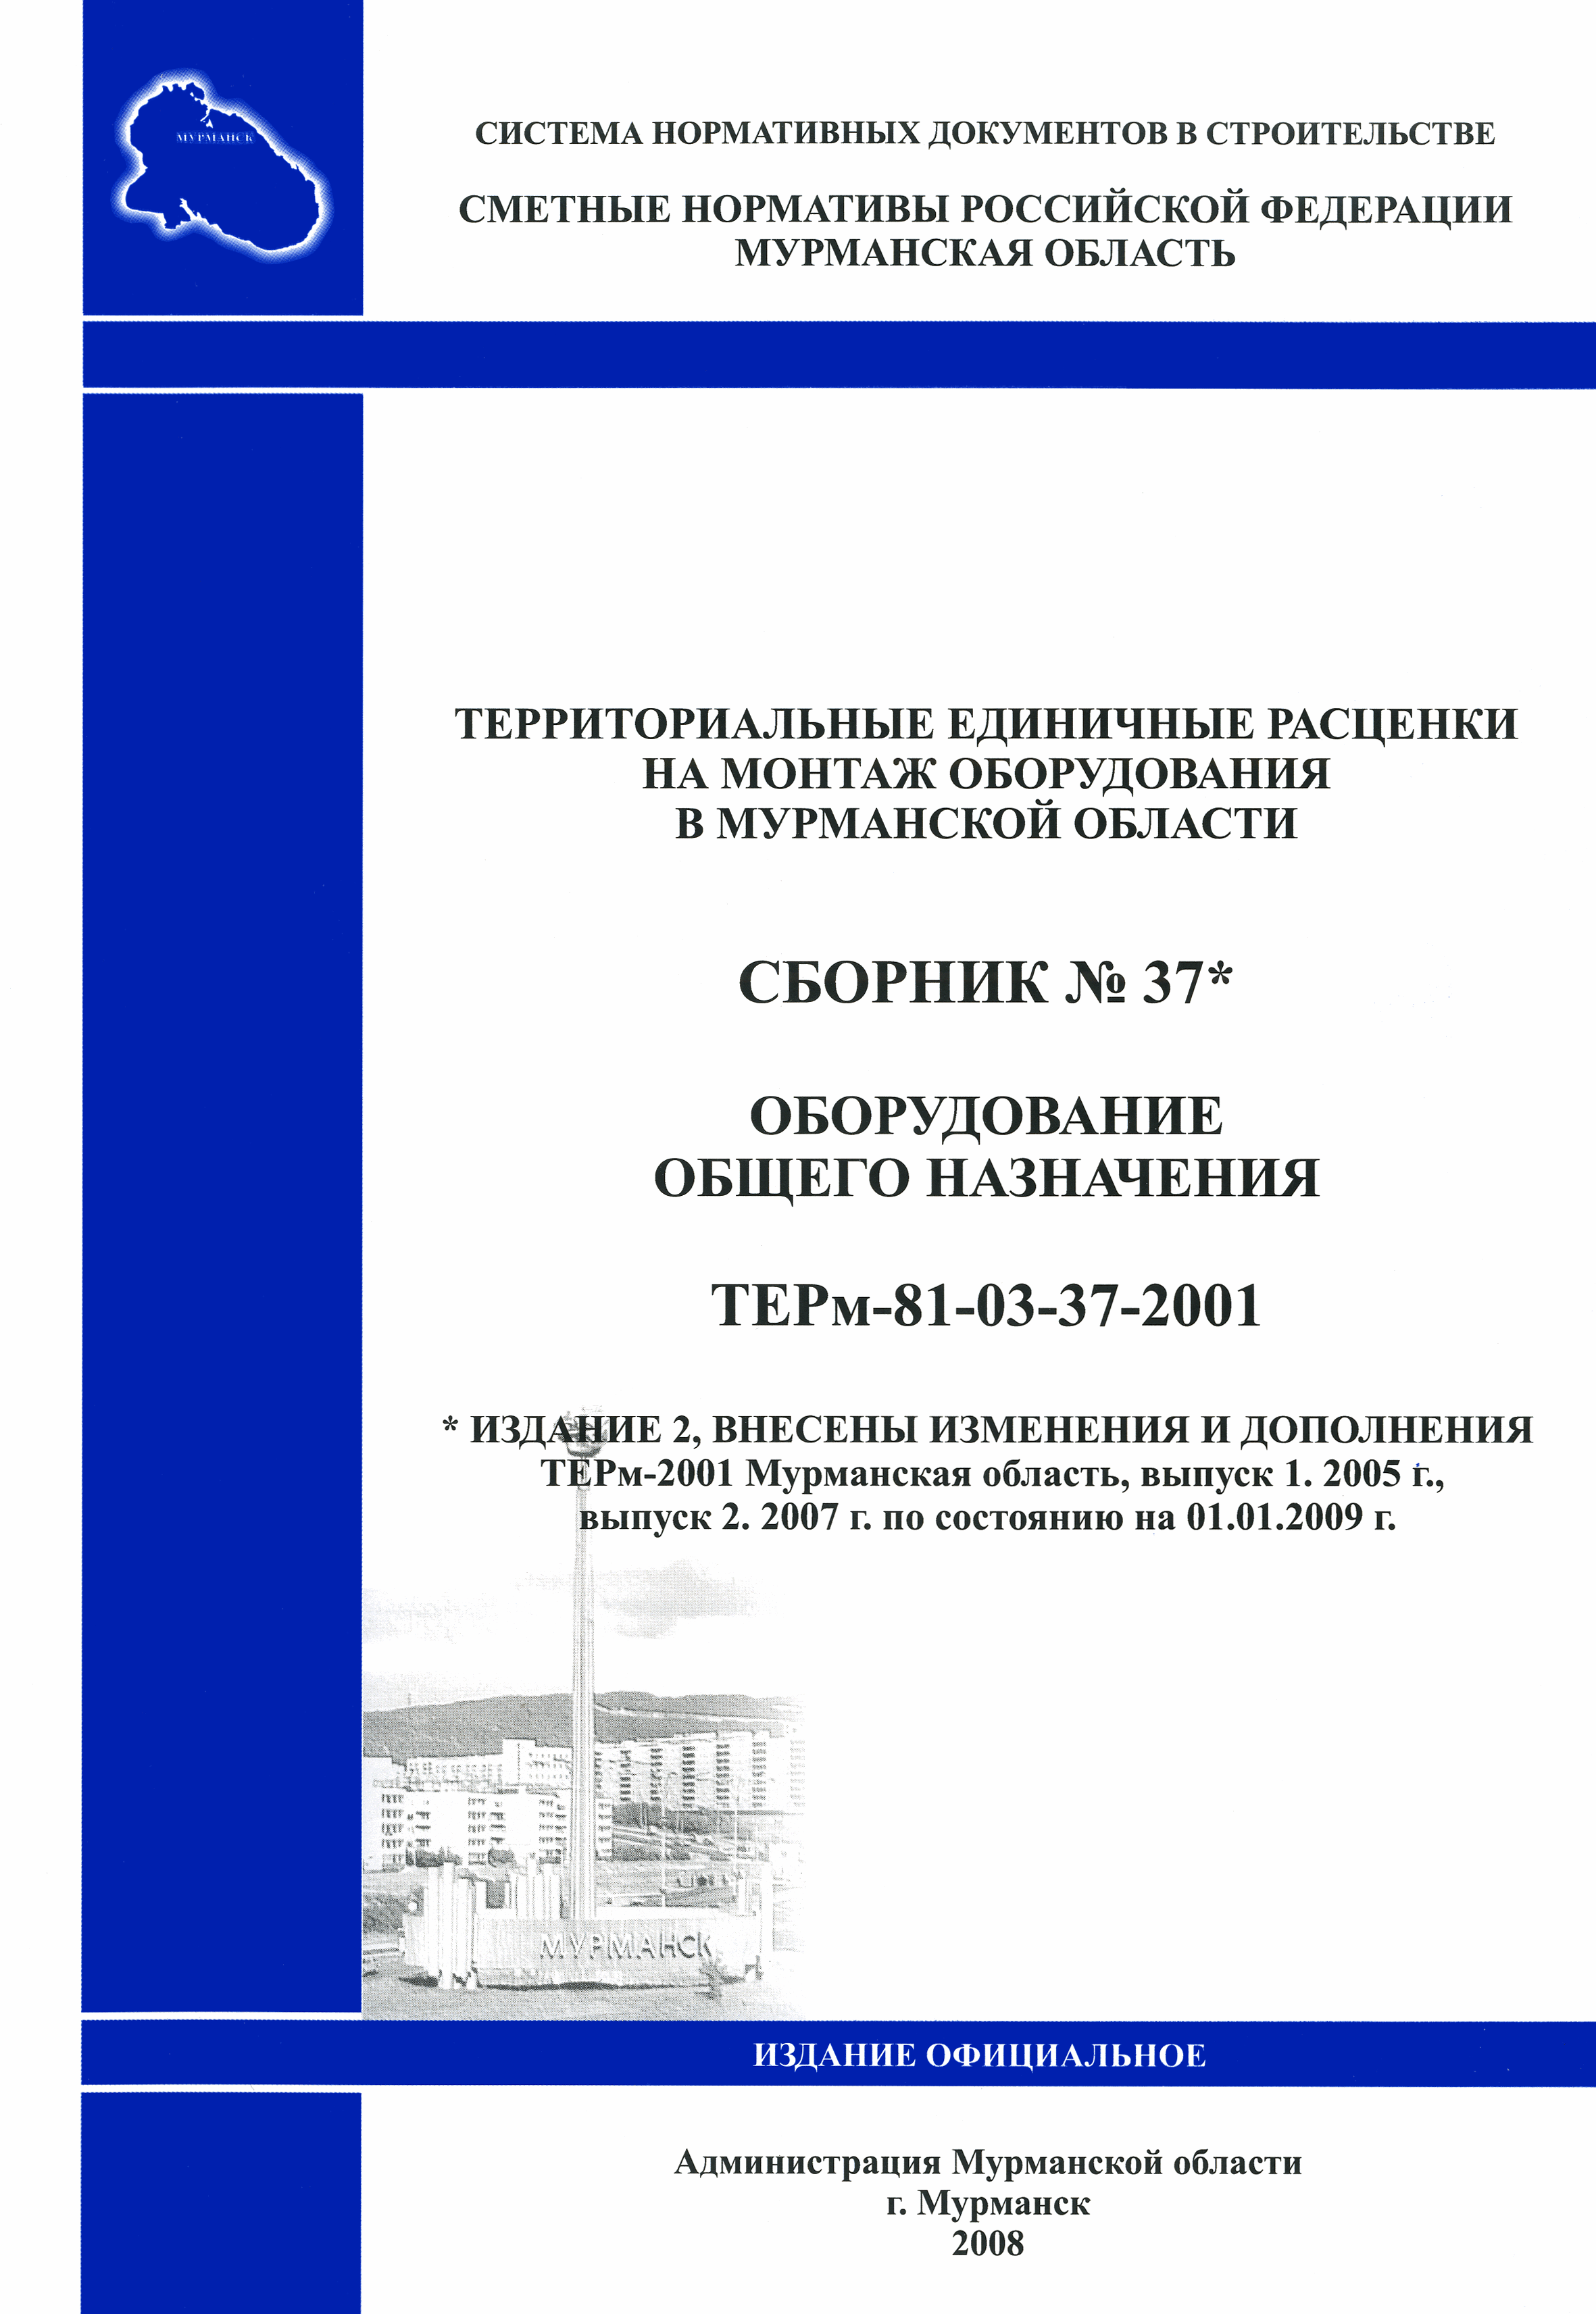 ТЕРм Мурманская область 2001-37